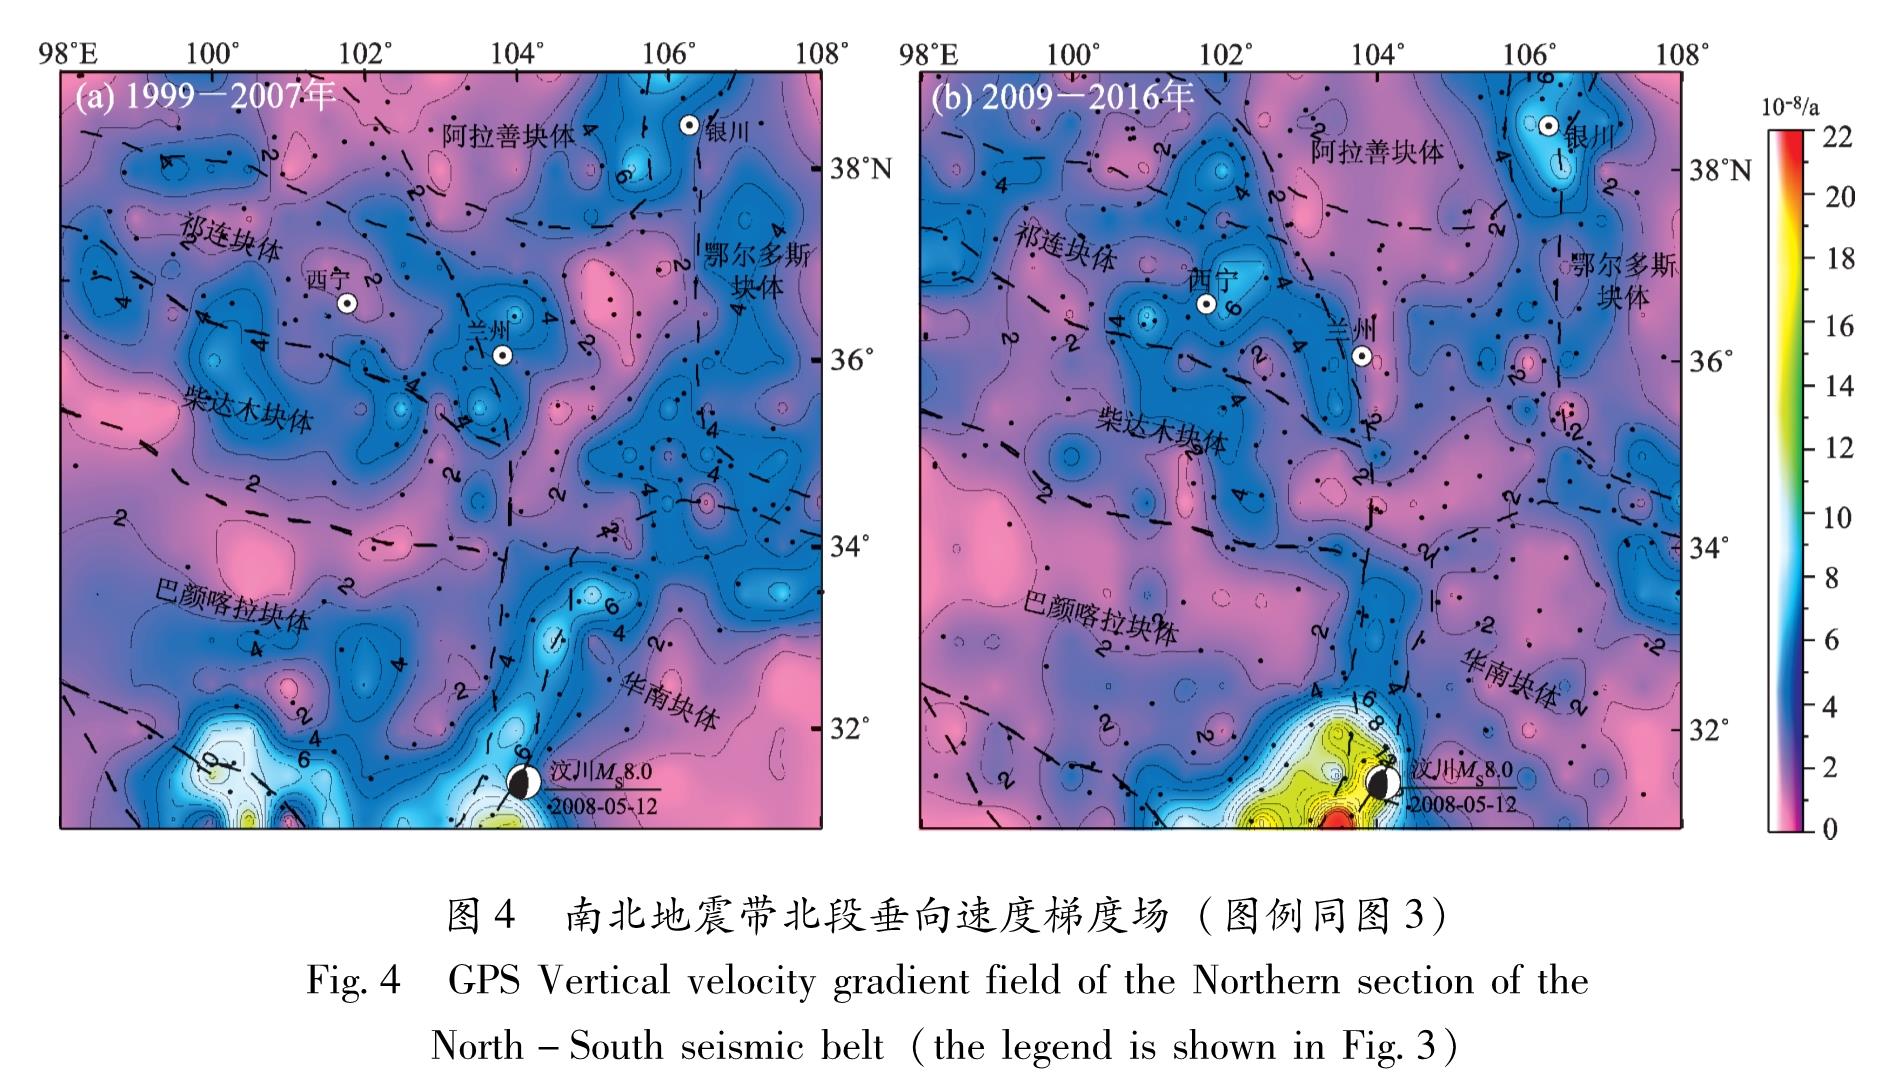 图4 南北地震带北段垂向速度梯度场(图例同图3)<br/>Fig.4 GPS Vertical velocity gradient field of the Northern section of the North-South seismic belt(the legend is shown in Fig.3)